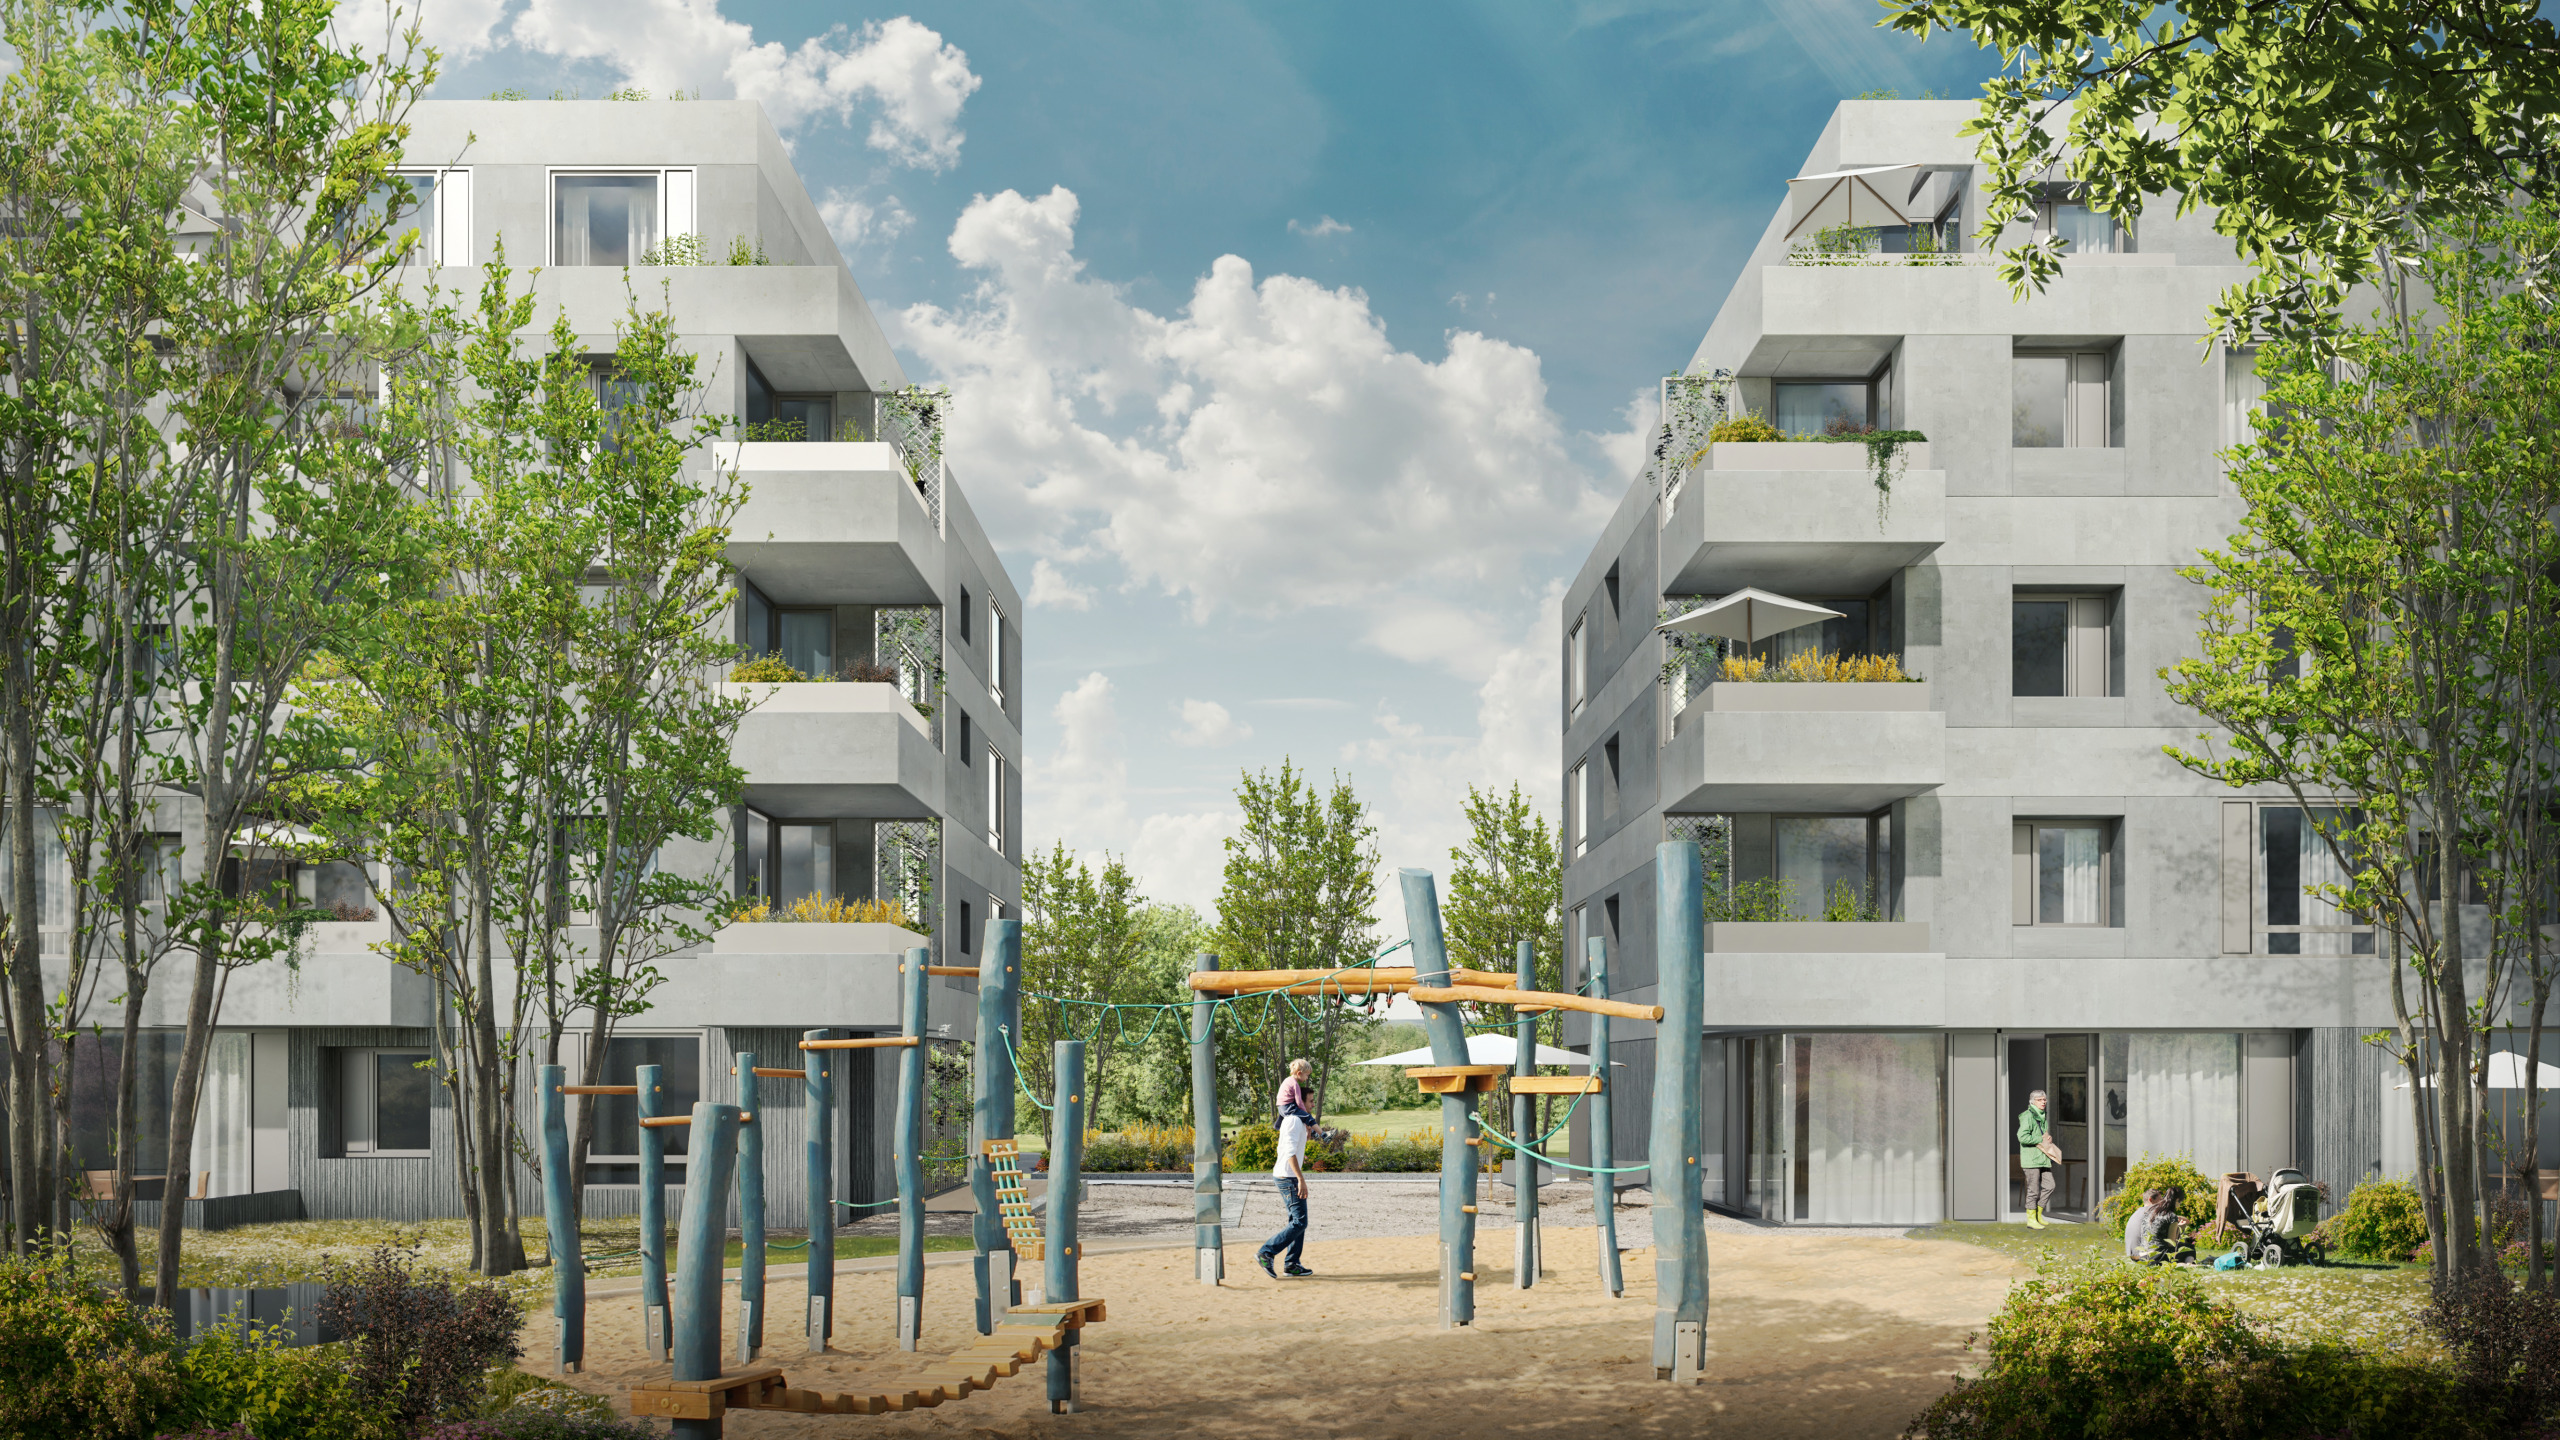 Architekturwettbewerb in Bochum in Massivbauweise